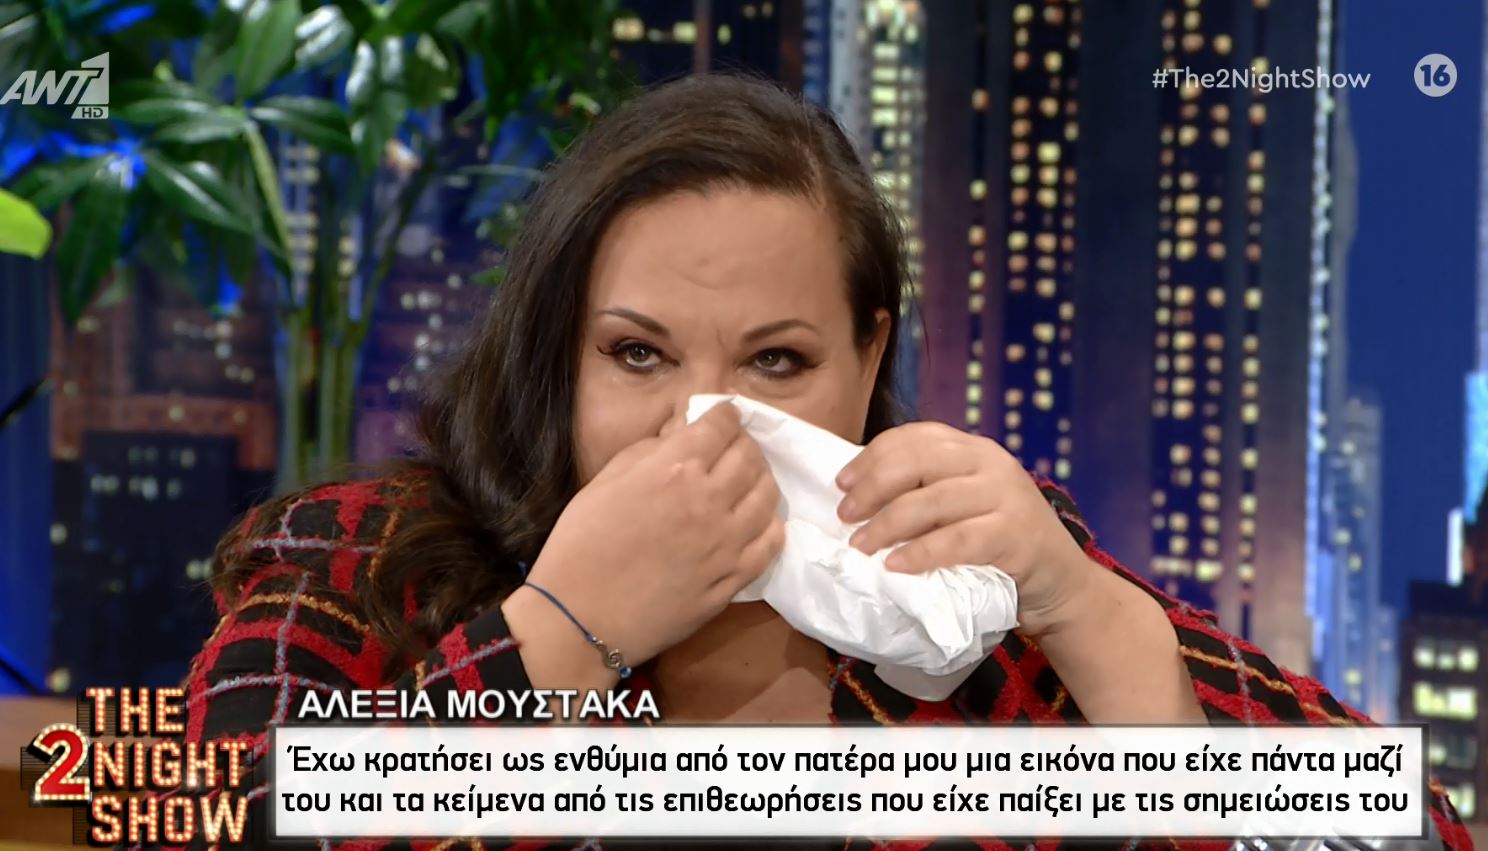 Αλεξία Μουστάκα: “Λύγισε” μιλώντας για τα ενθύμια του πατέρα της – ΒΙΝΤΕΟ